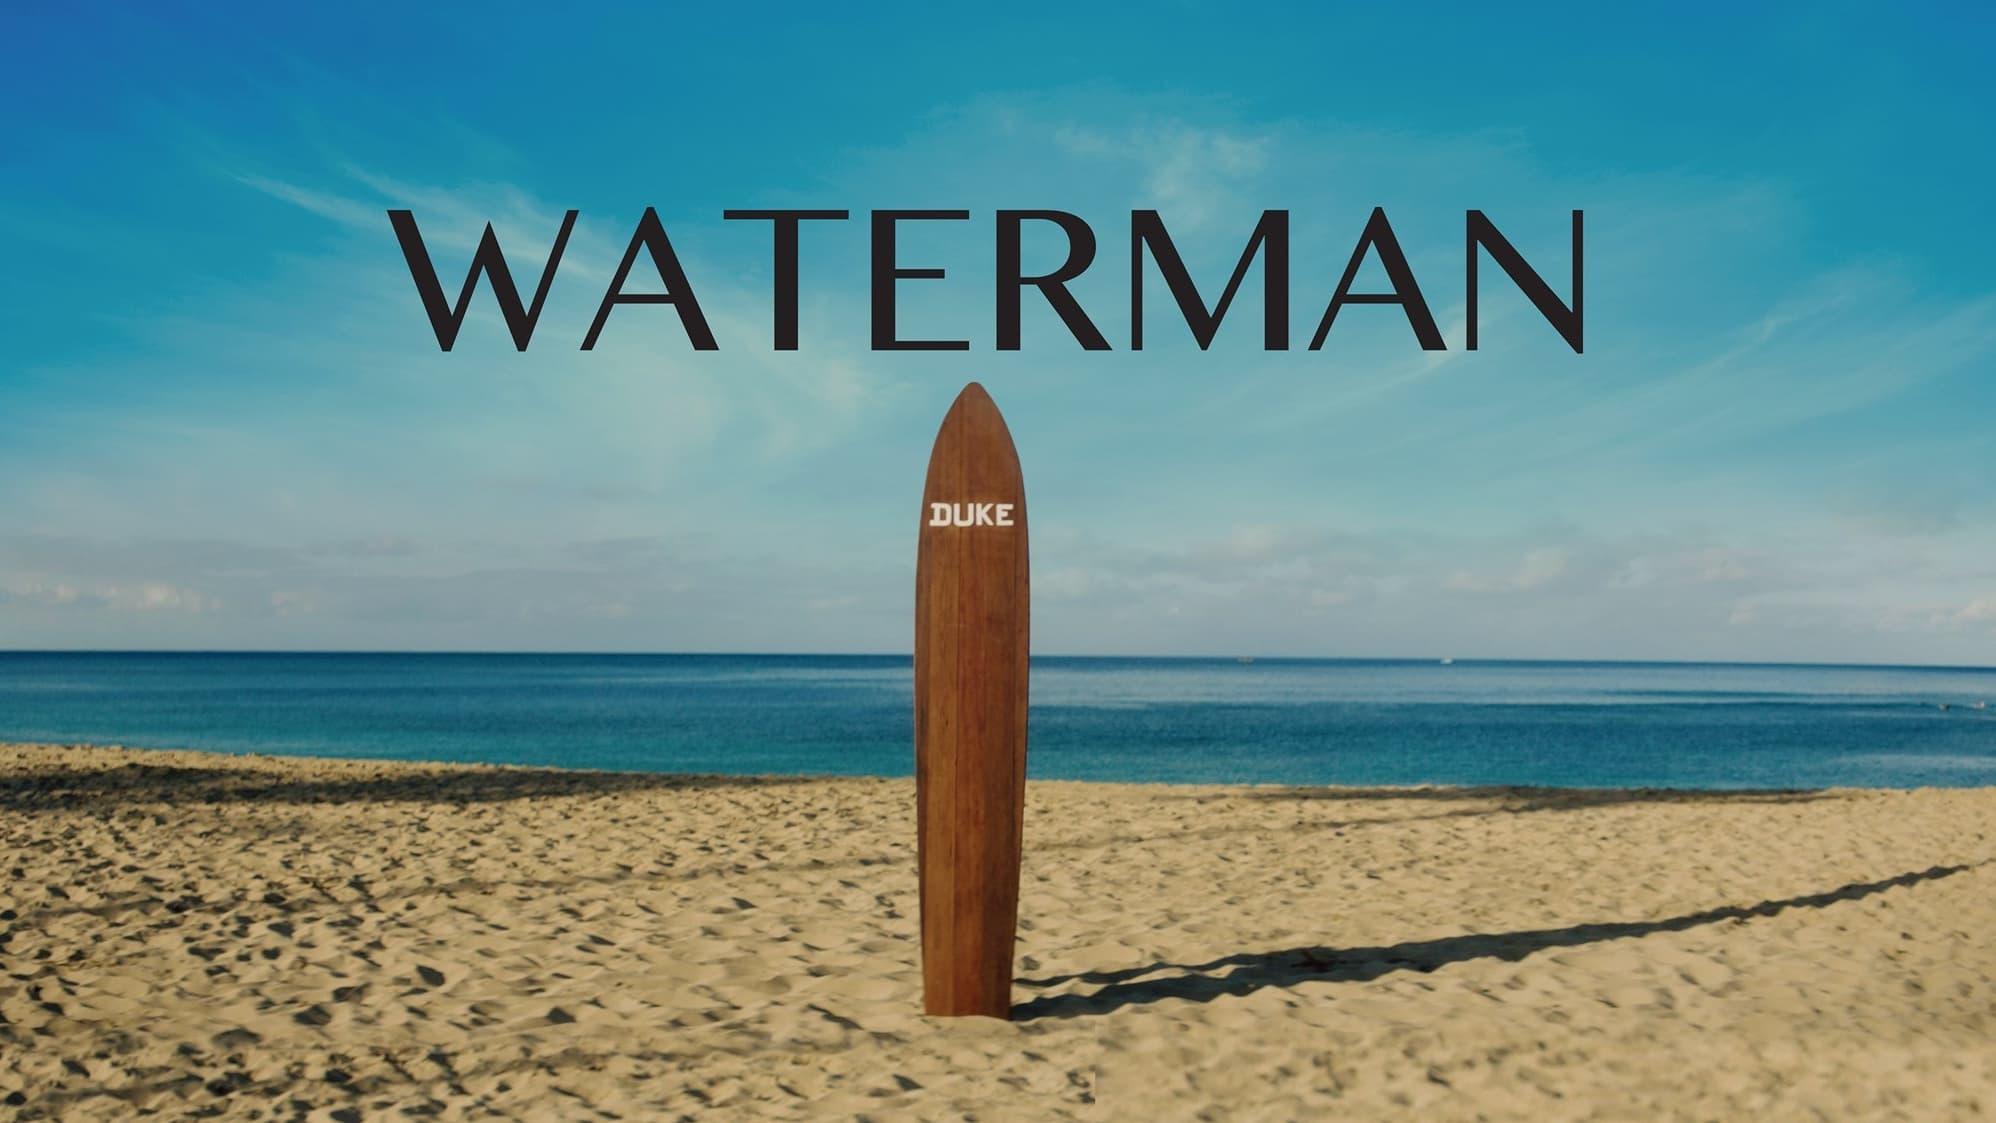 Waterman backdrop